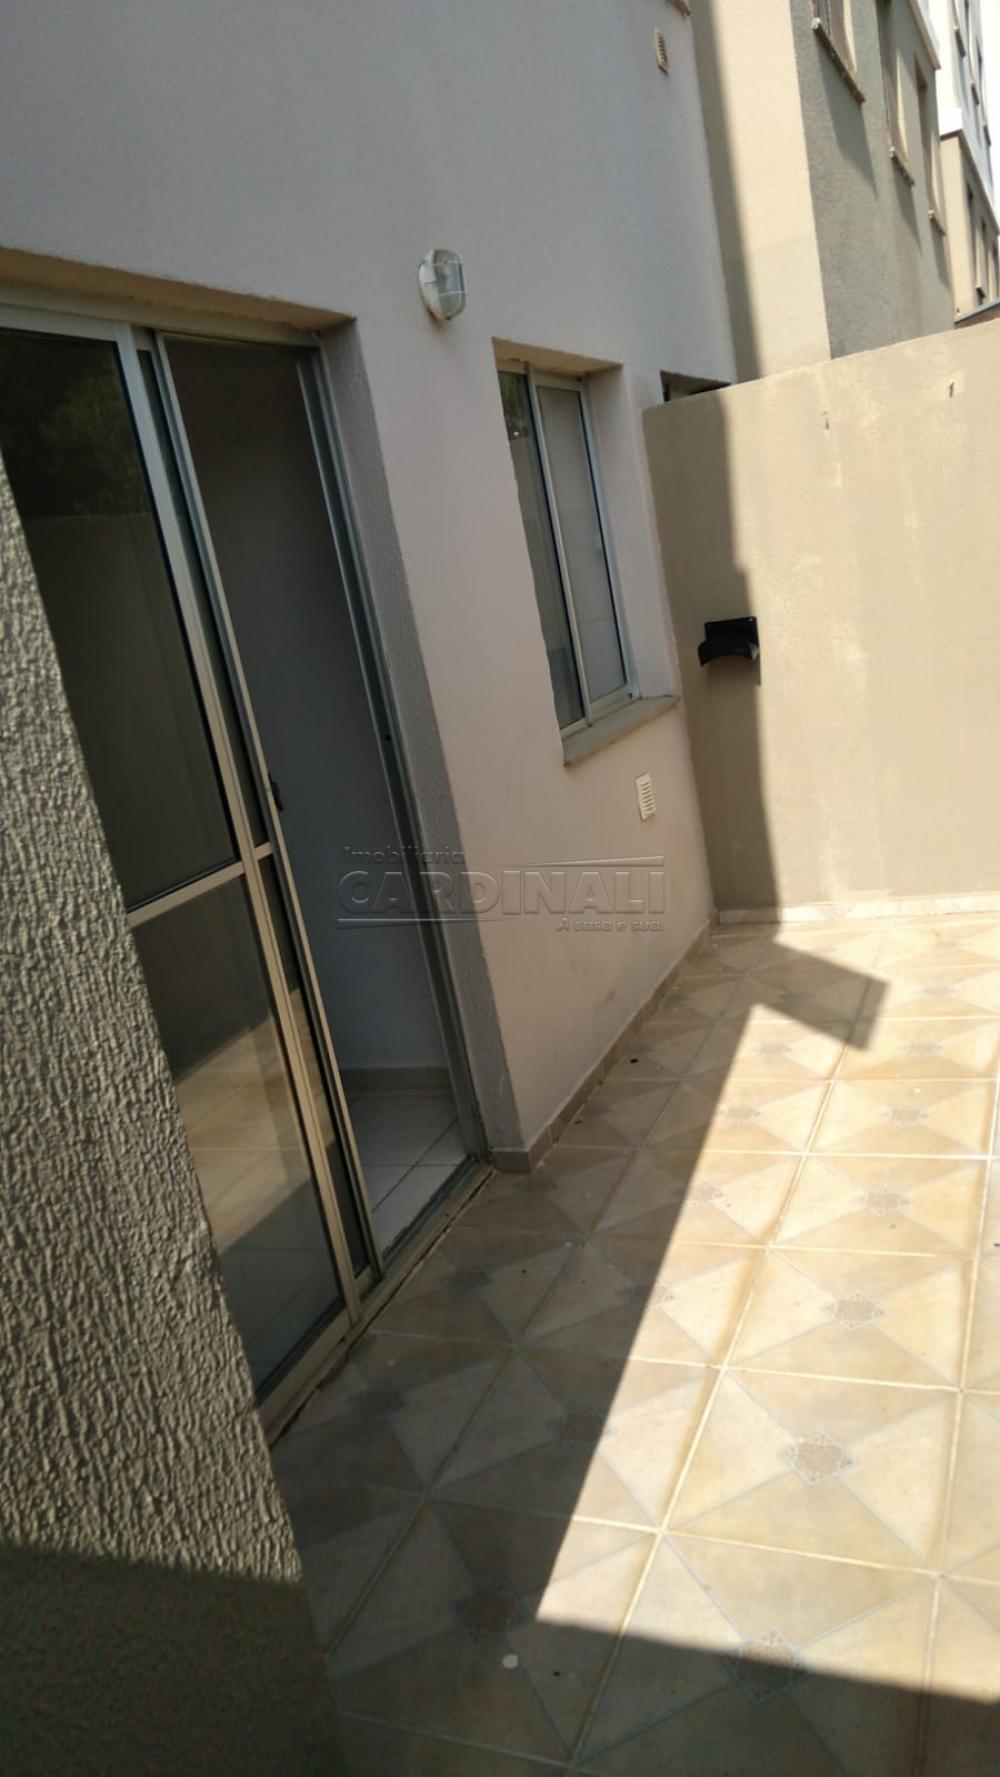 Comprar Apartamento / Padrão em São Carlos R$ 160.000,00 - Foto 2